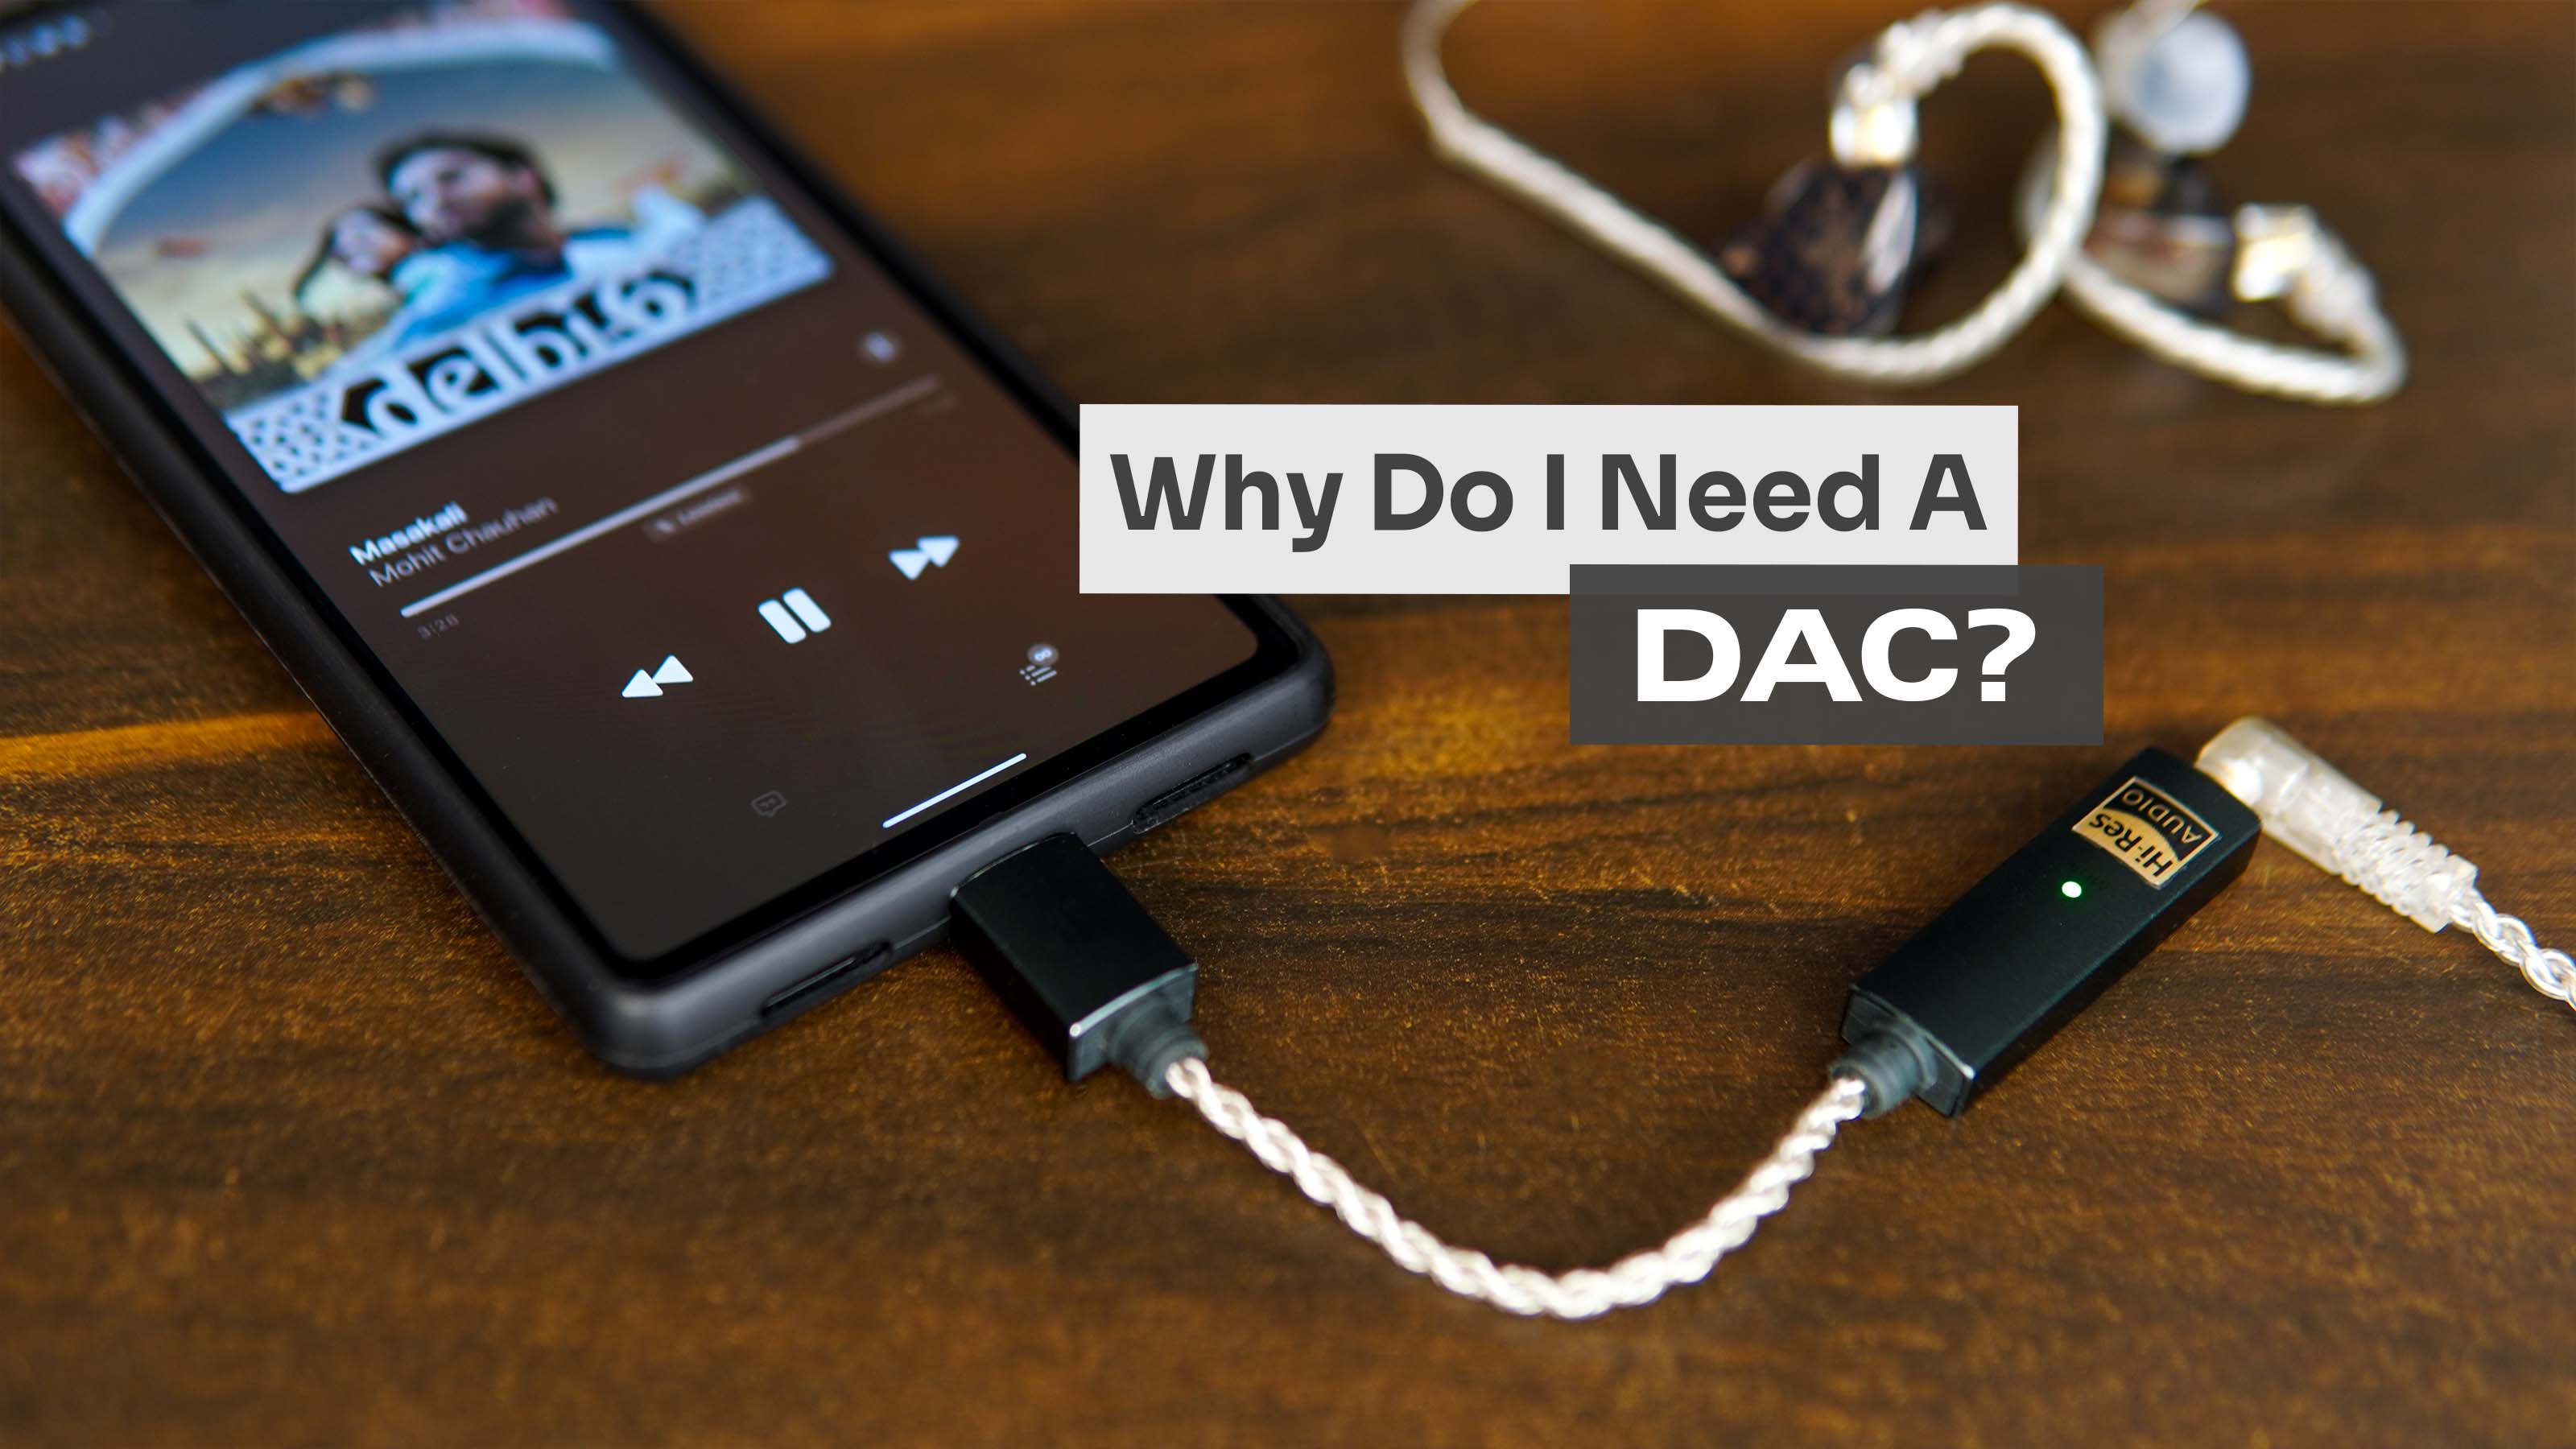 Why do I need a DAC?